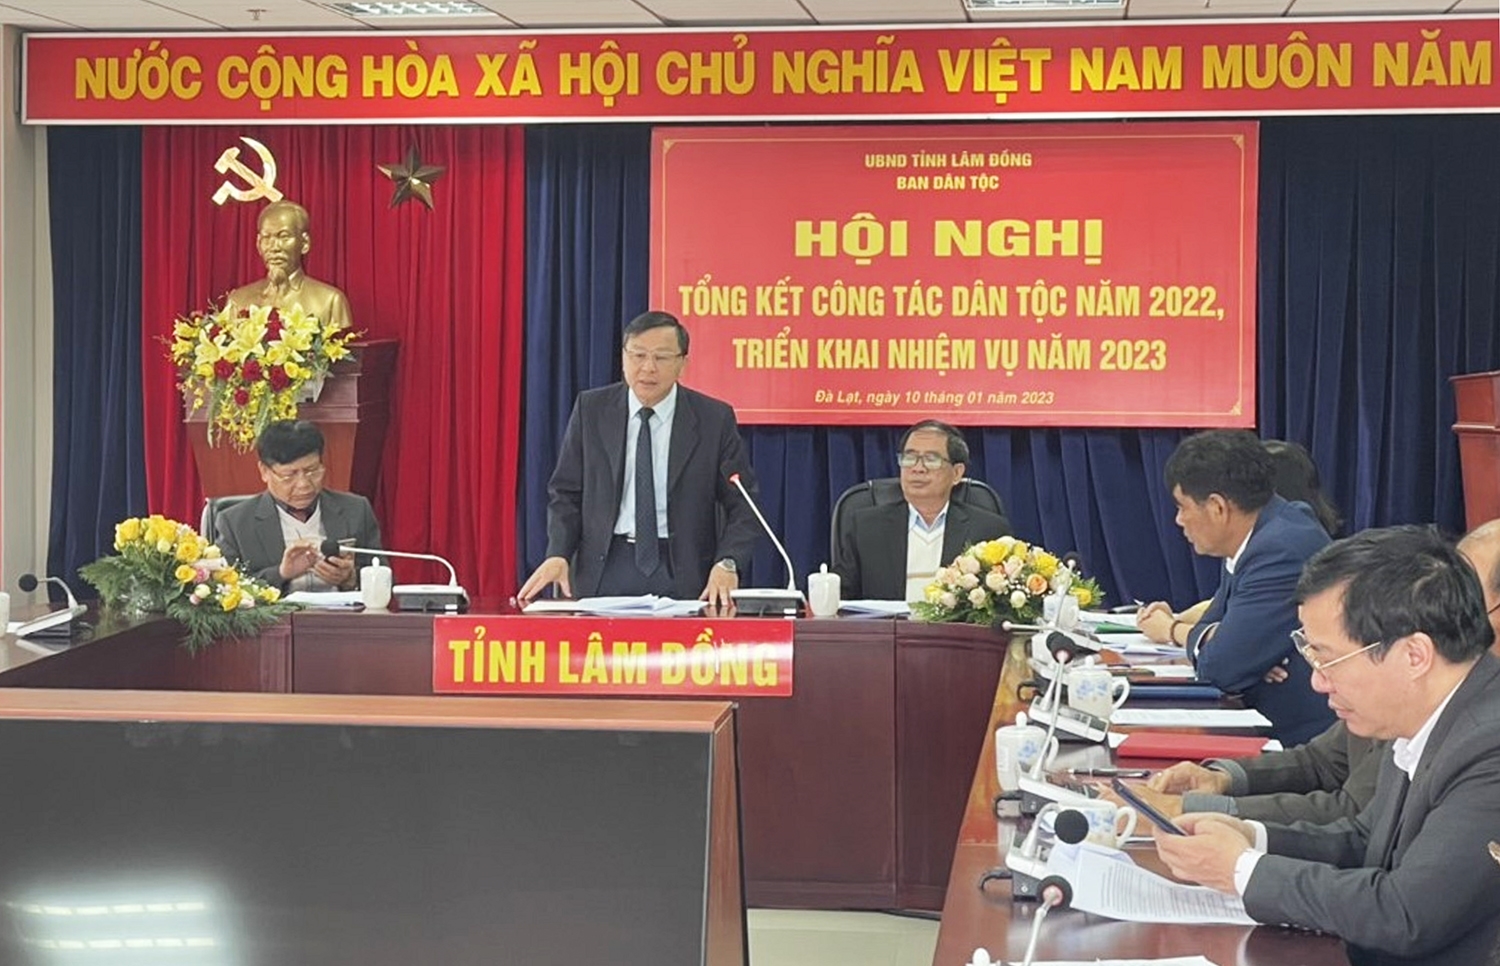 Ông Võ Văn Hoàng - Trưởng Ban Dân tộc Lâm Đồng báo cáo tại Hội nghị 